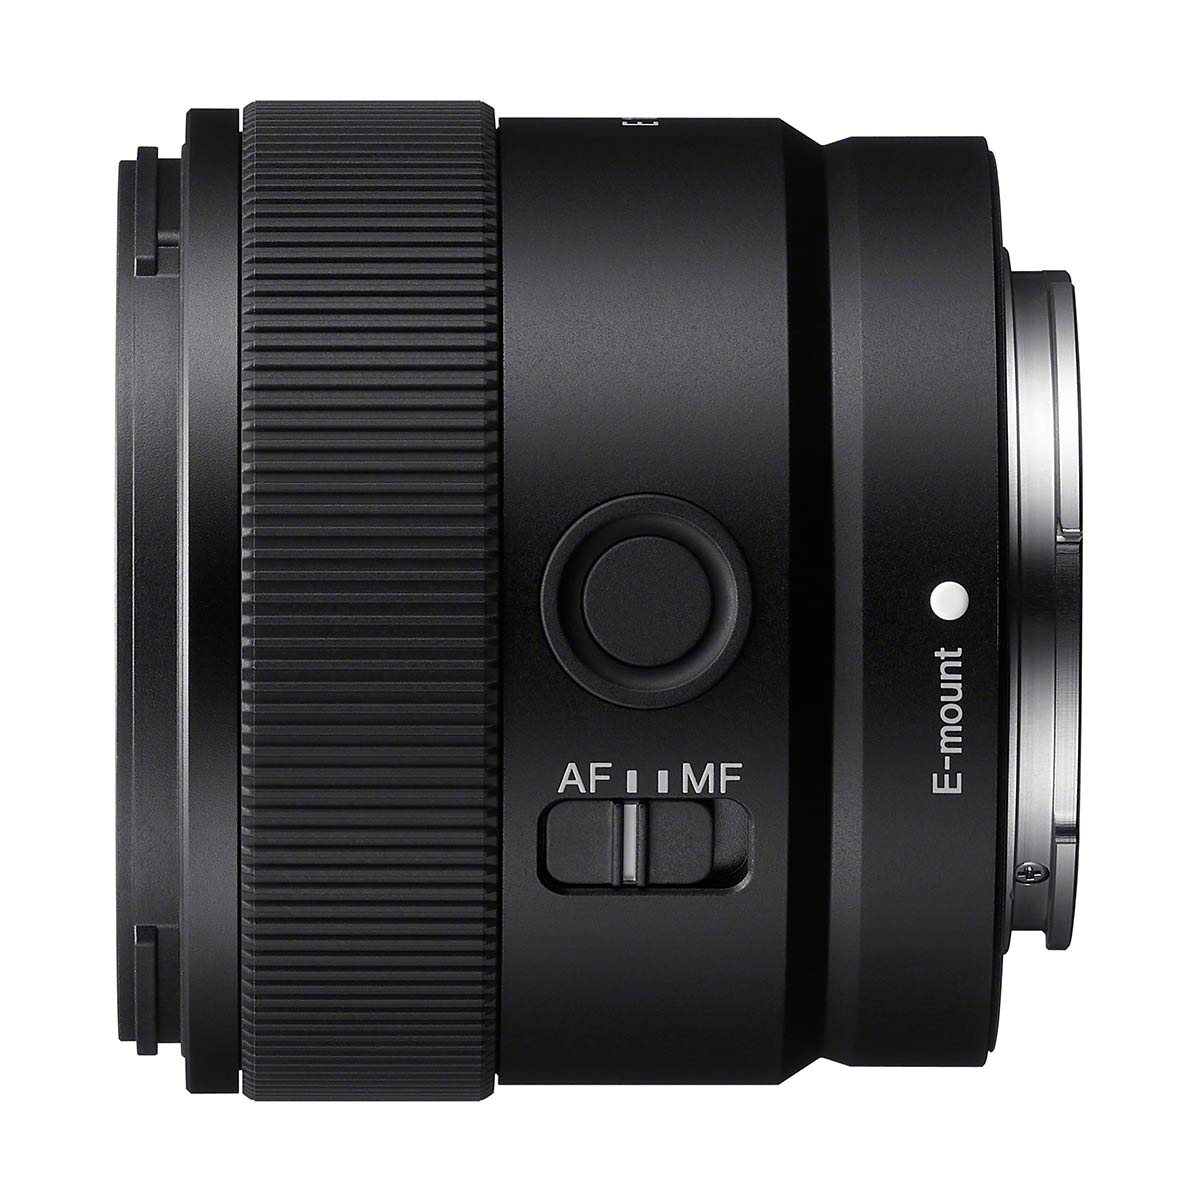 Sony E-Mount 11mm f/1.8 Lens